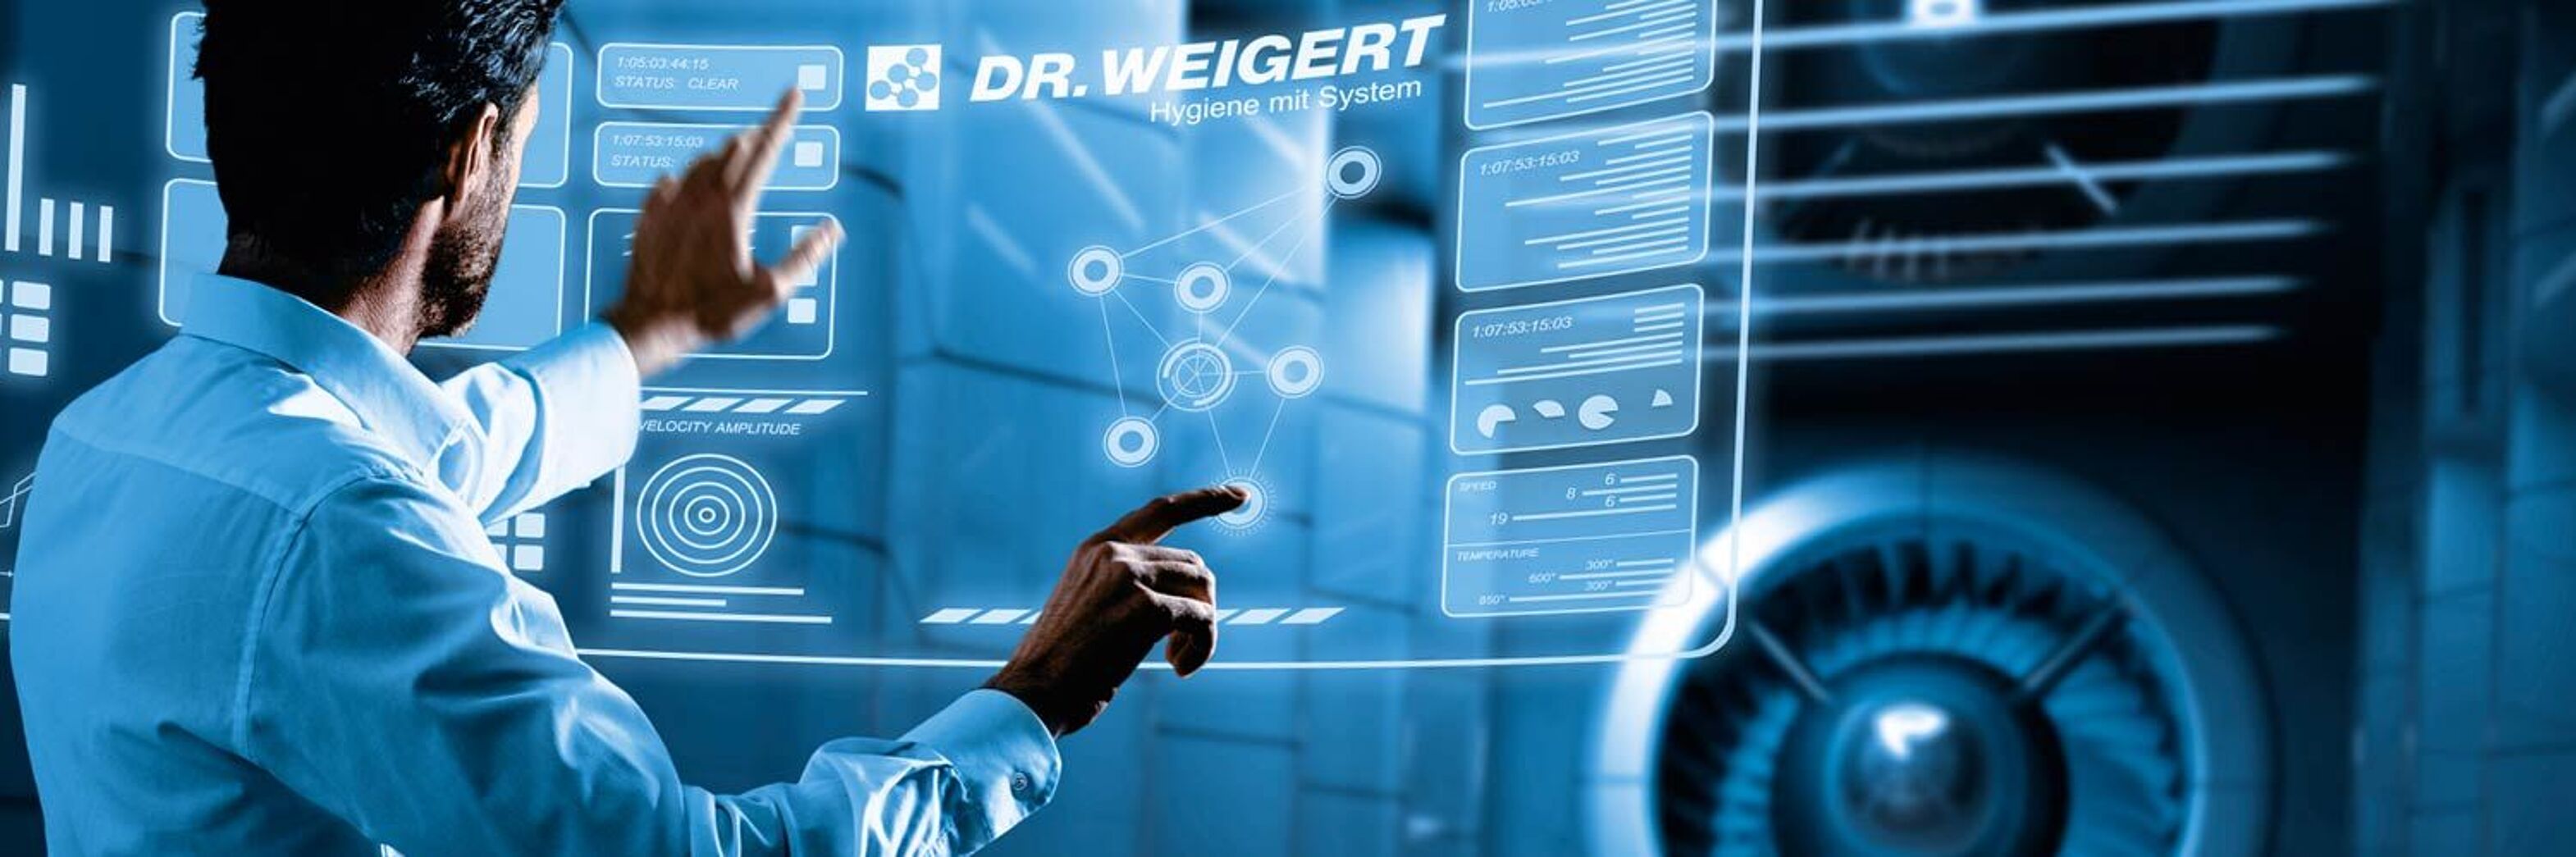 Dr. Weigert - Hygiene mit System